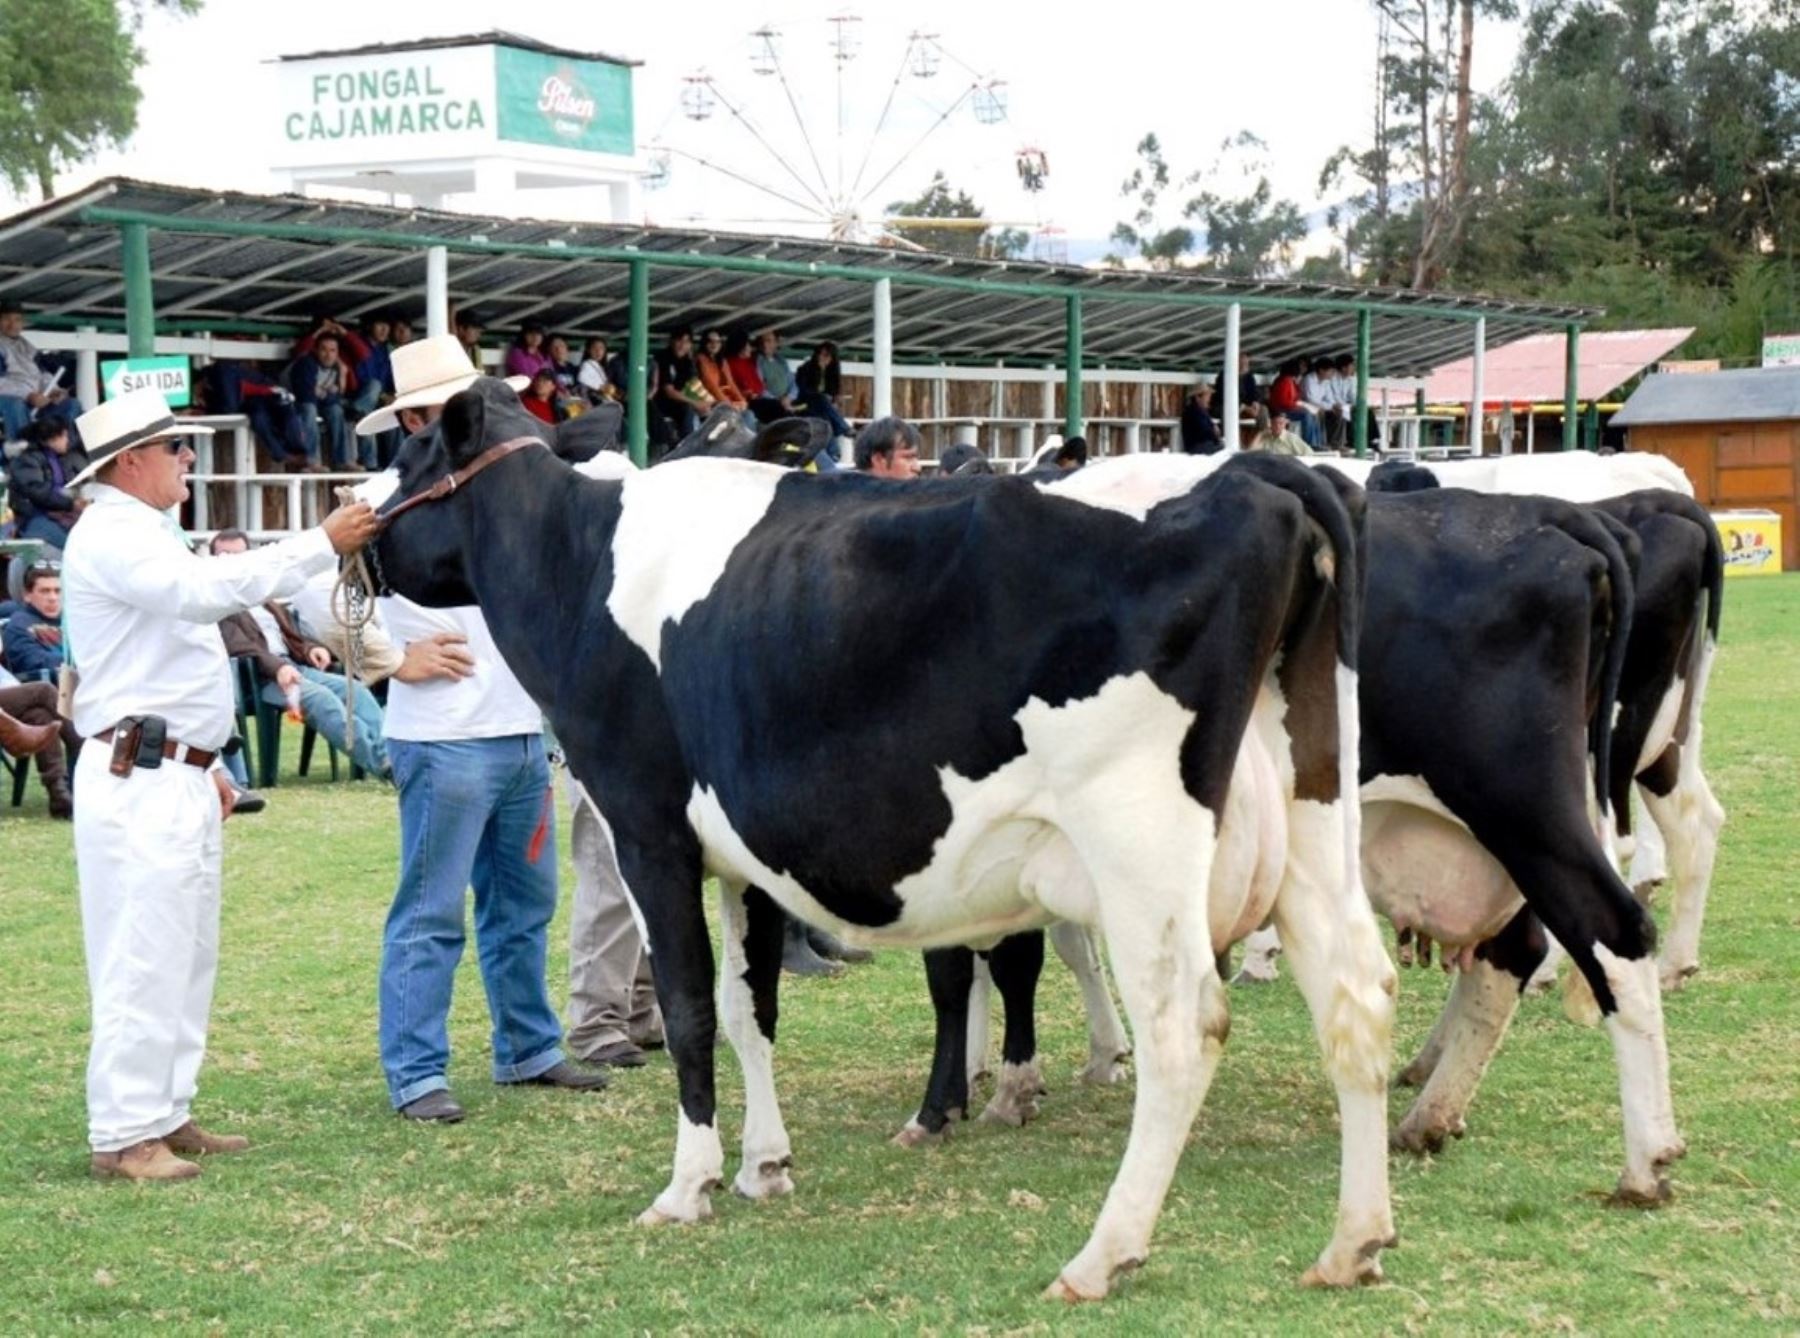 Fongal vuelve a la presencialidad en Cajamarca después de tres años tras superarse la pandemia de covid-19. La tradicional feria agropecuaria y ganadera se celebrará del 23 al 31 de julio y espera recibir 40,000 visitantes. ANDINA/Difusión